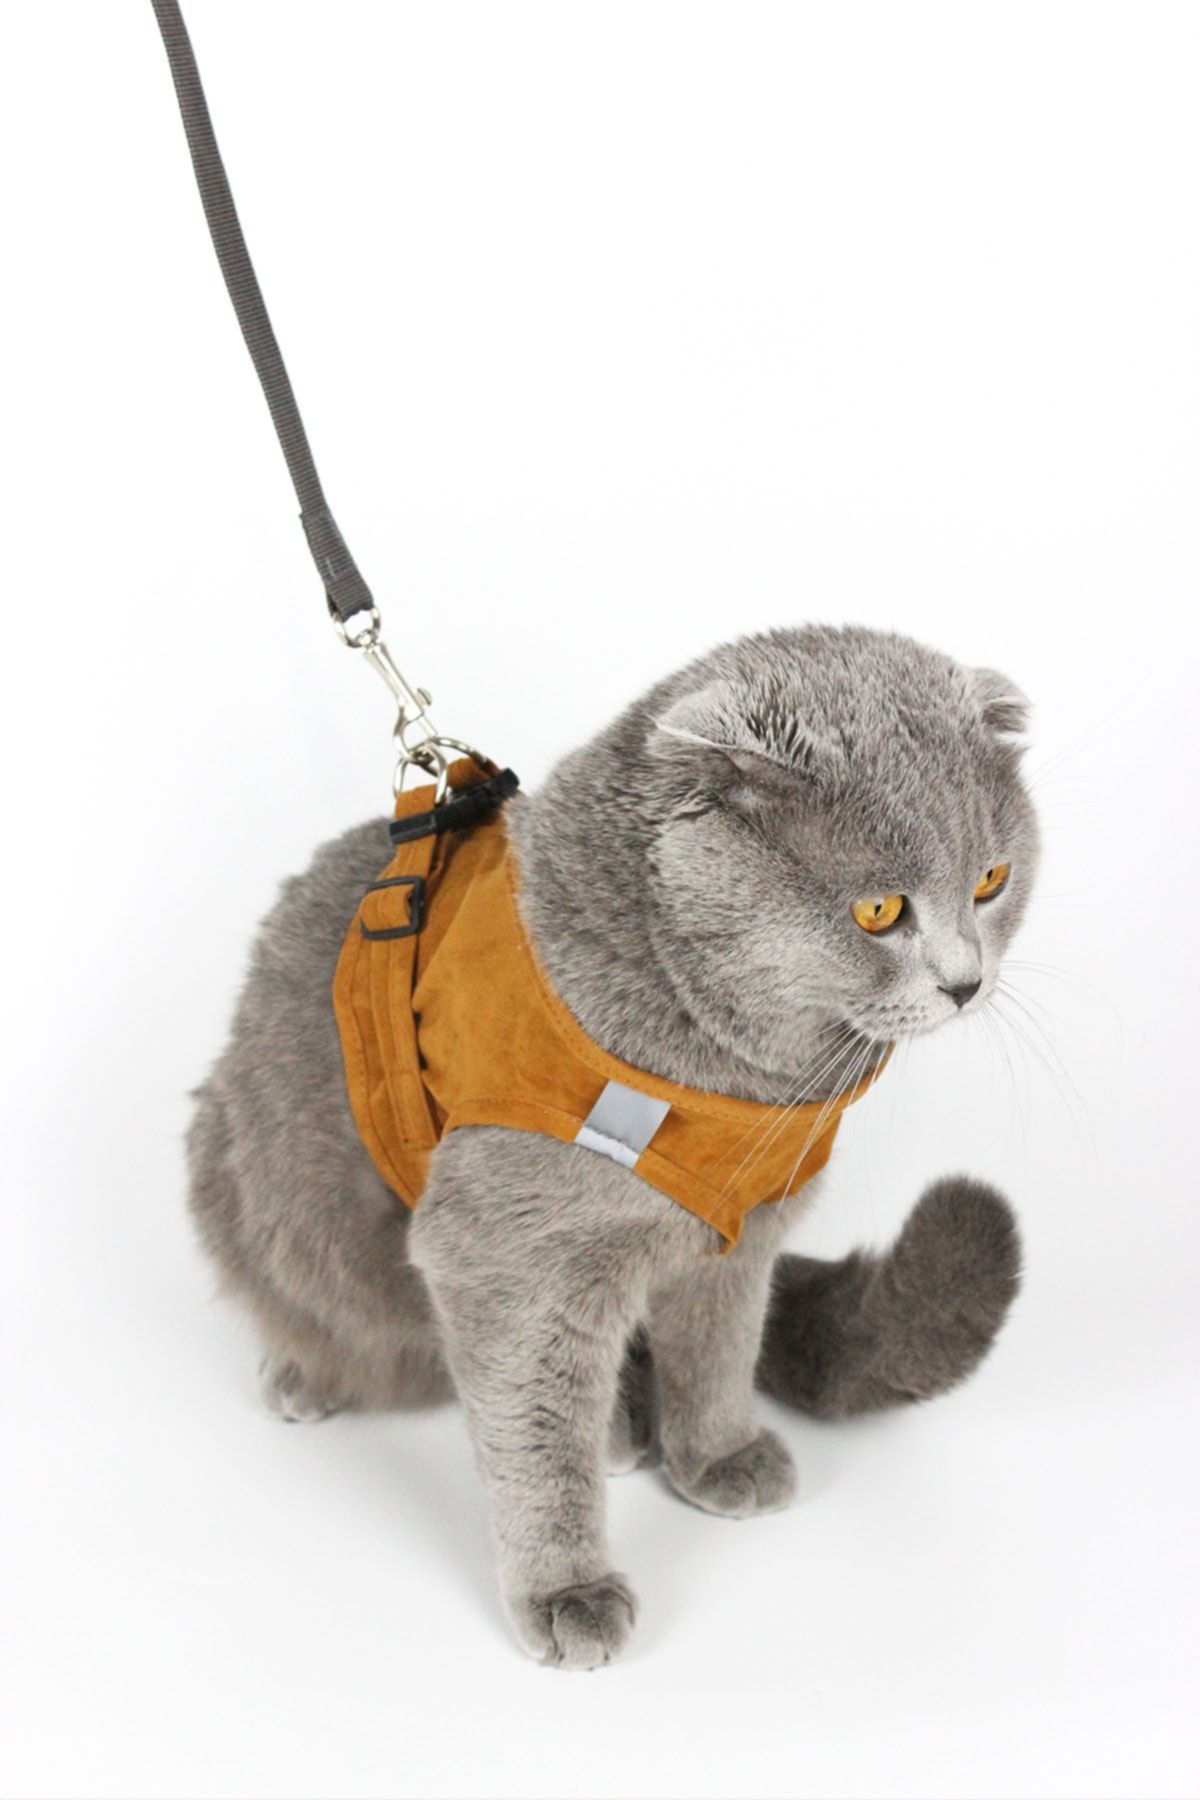 Petköy Kedi Gezdirme Tasması - Kedi Tasması Göğüs Tasma Seti Yumuşak Süet Kumaş Taba Renk